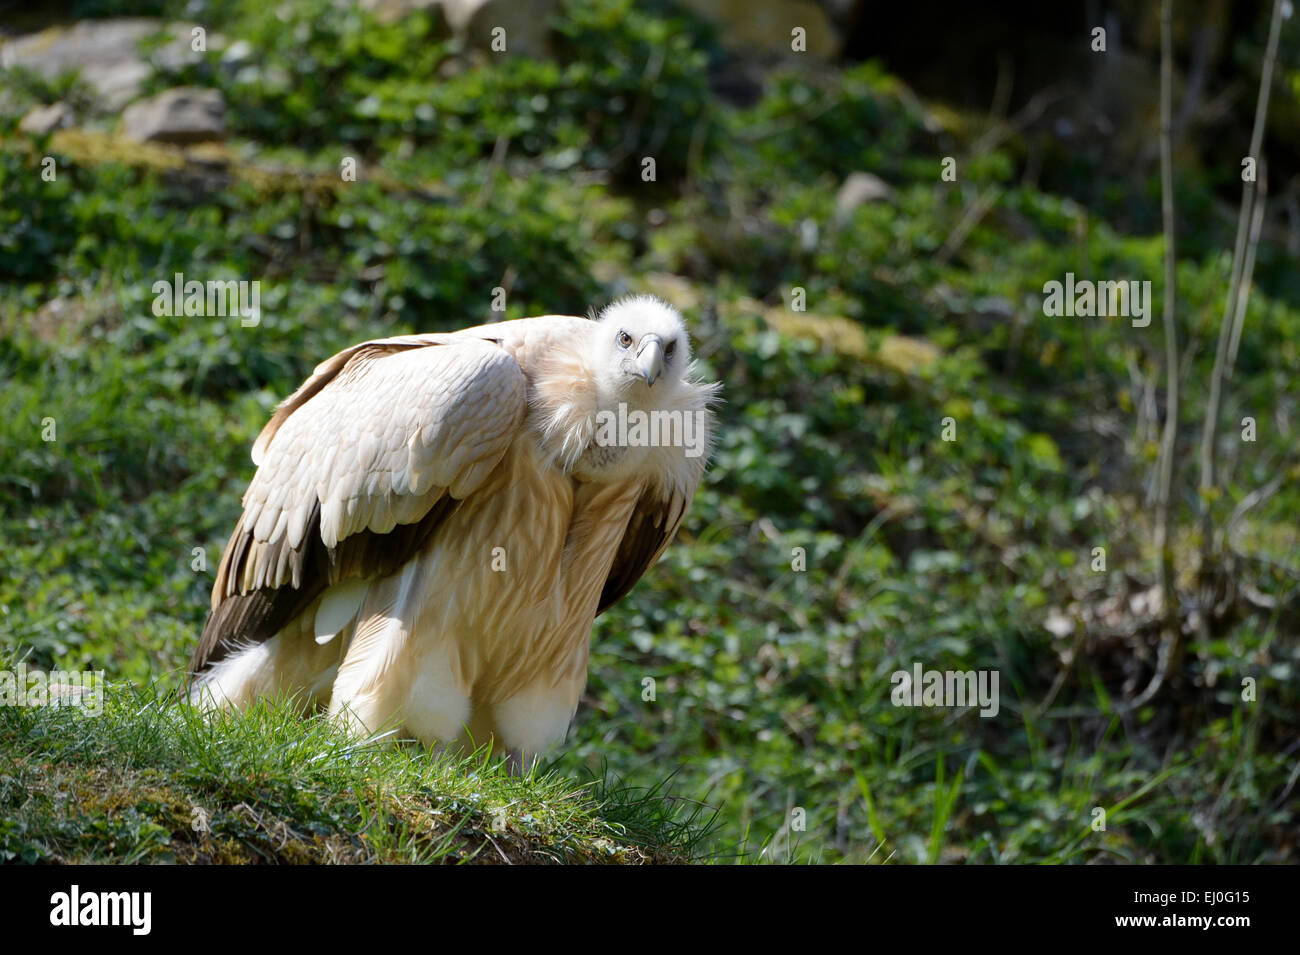 Dorso bianco vulture, Gyps africanus, Gyps, accipitrids, gli avvoltoi del vecchio mondo avvoltoi, uccelli, decontaminanti, Germania, Europa Foto Stock